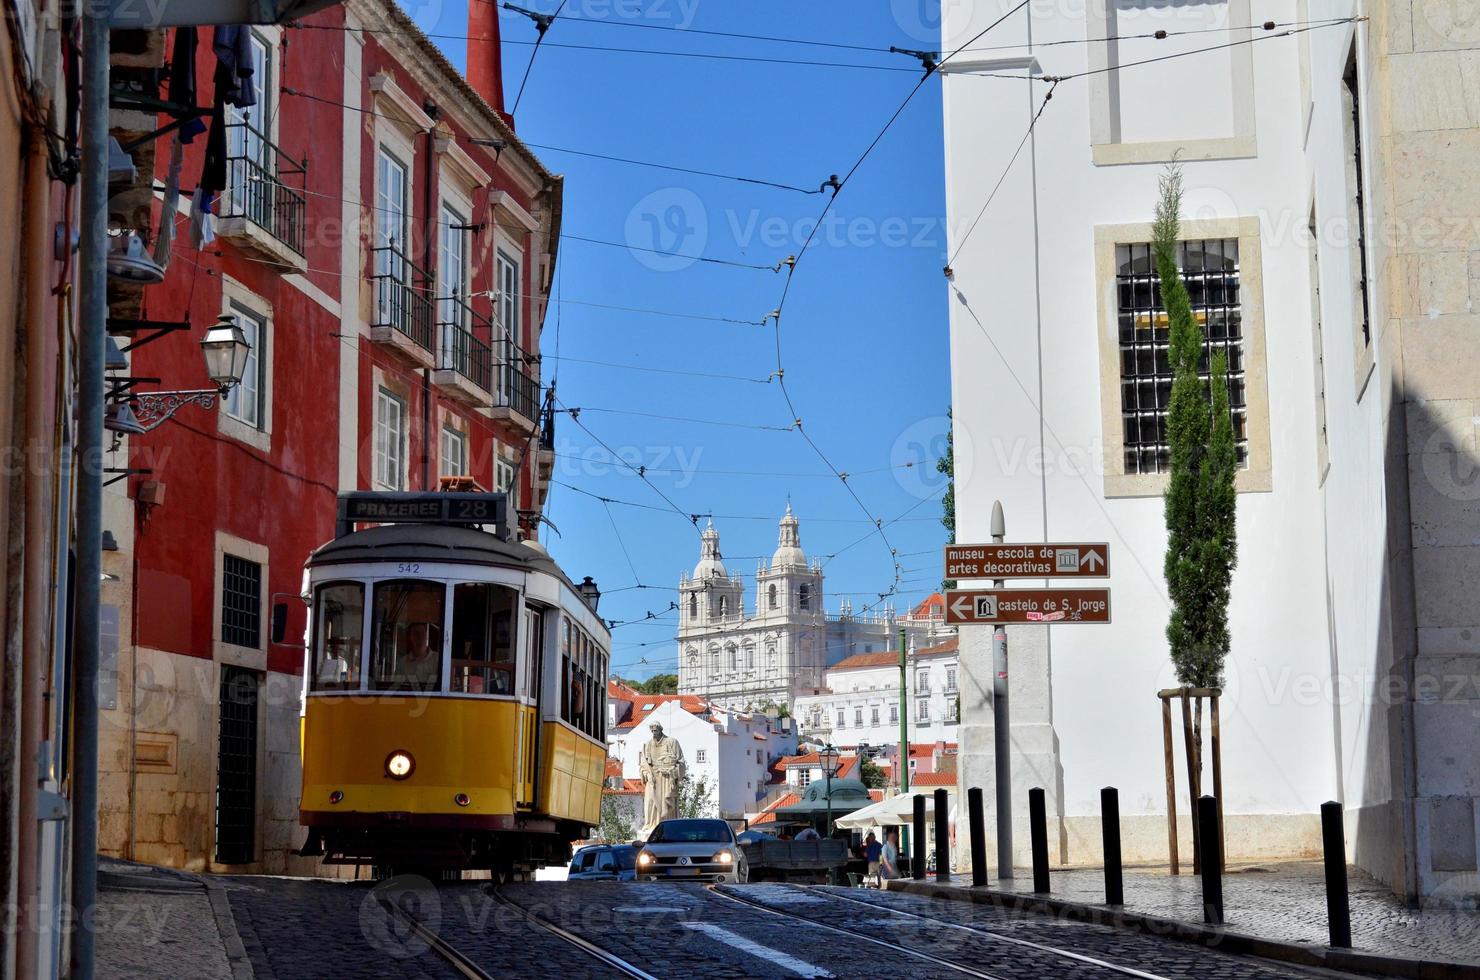 Lisbonne: tramway jaune et église sur une colline photo